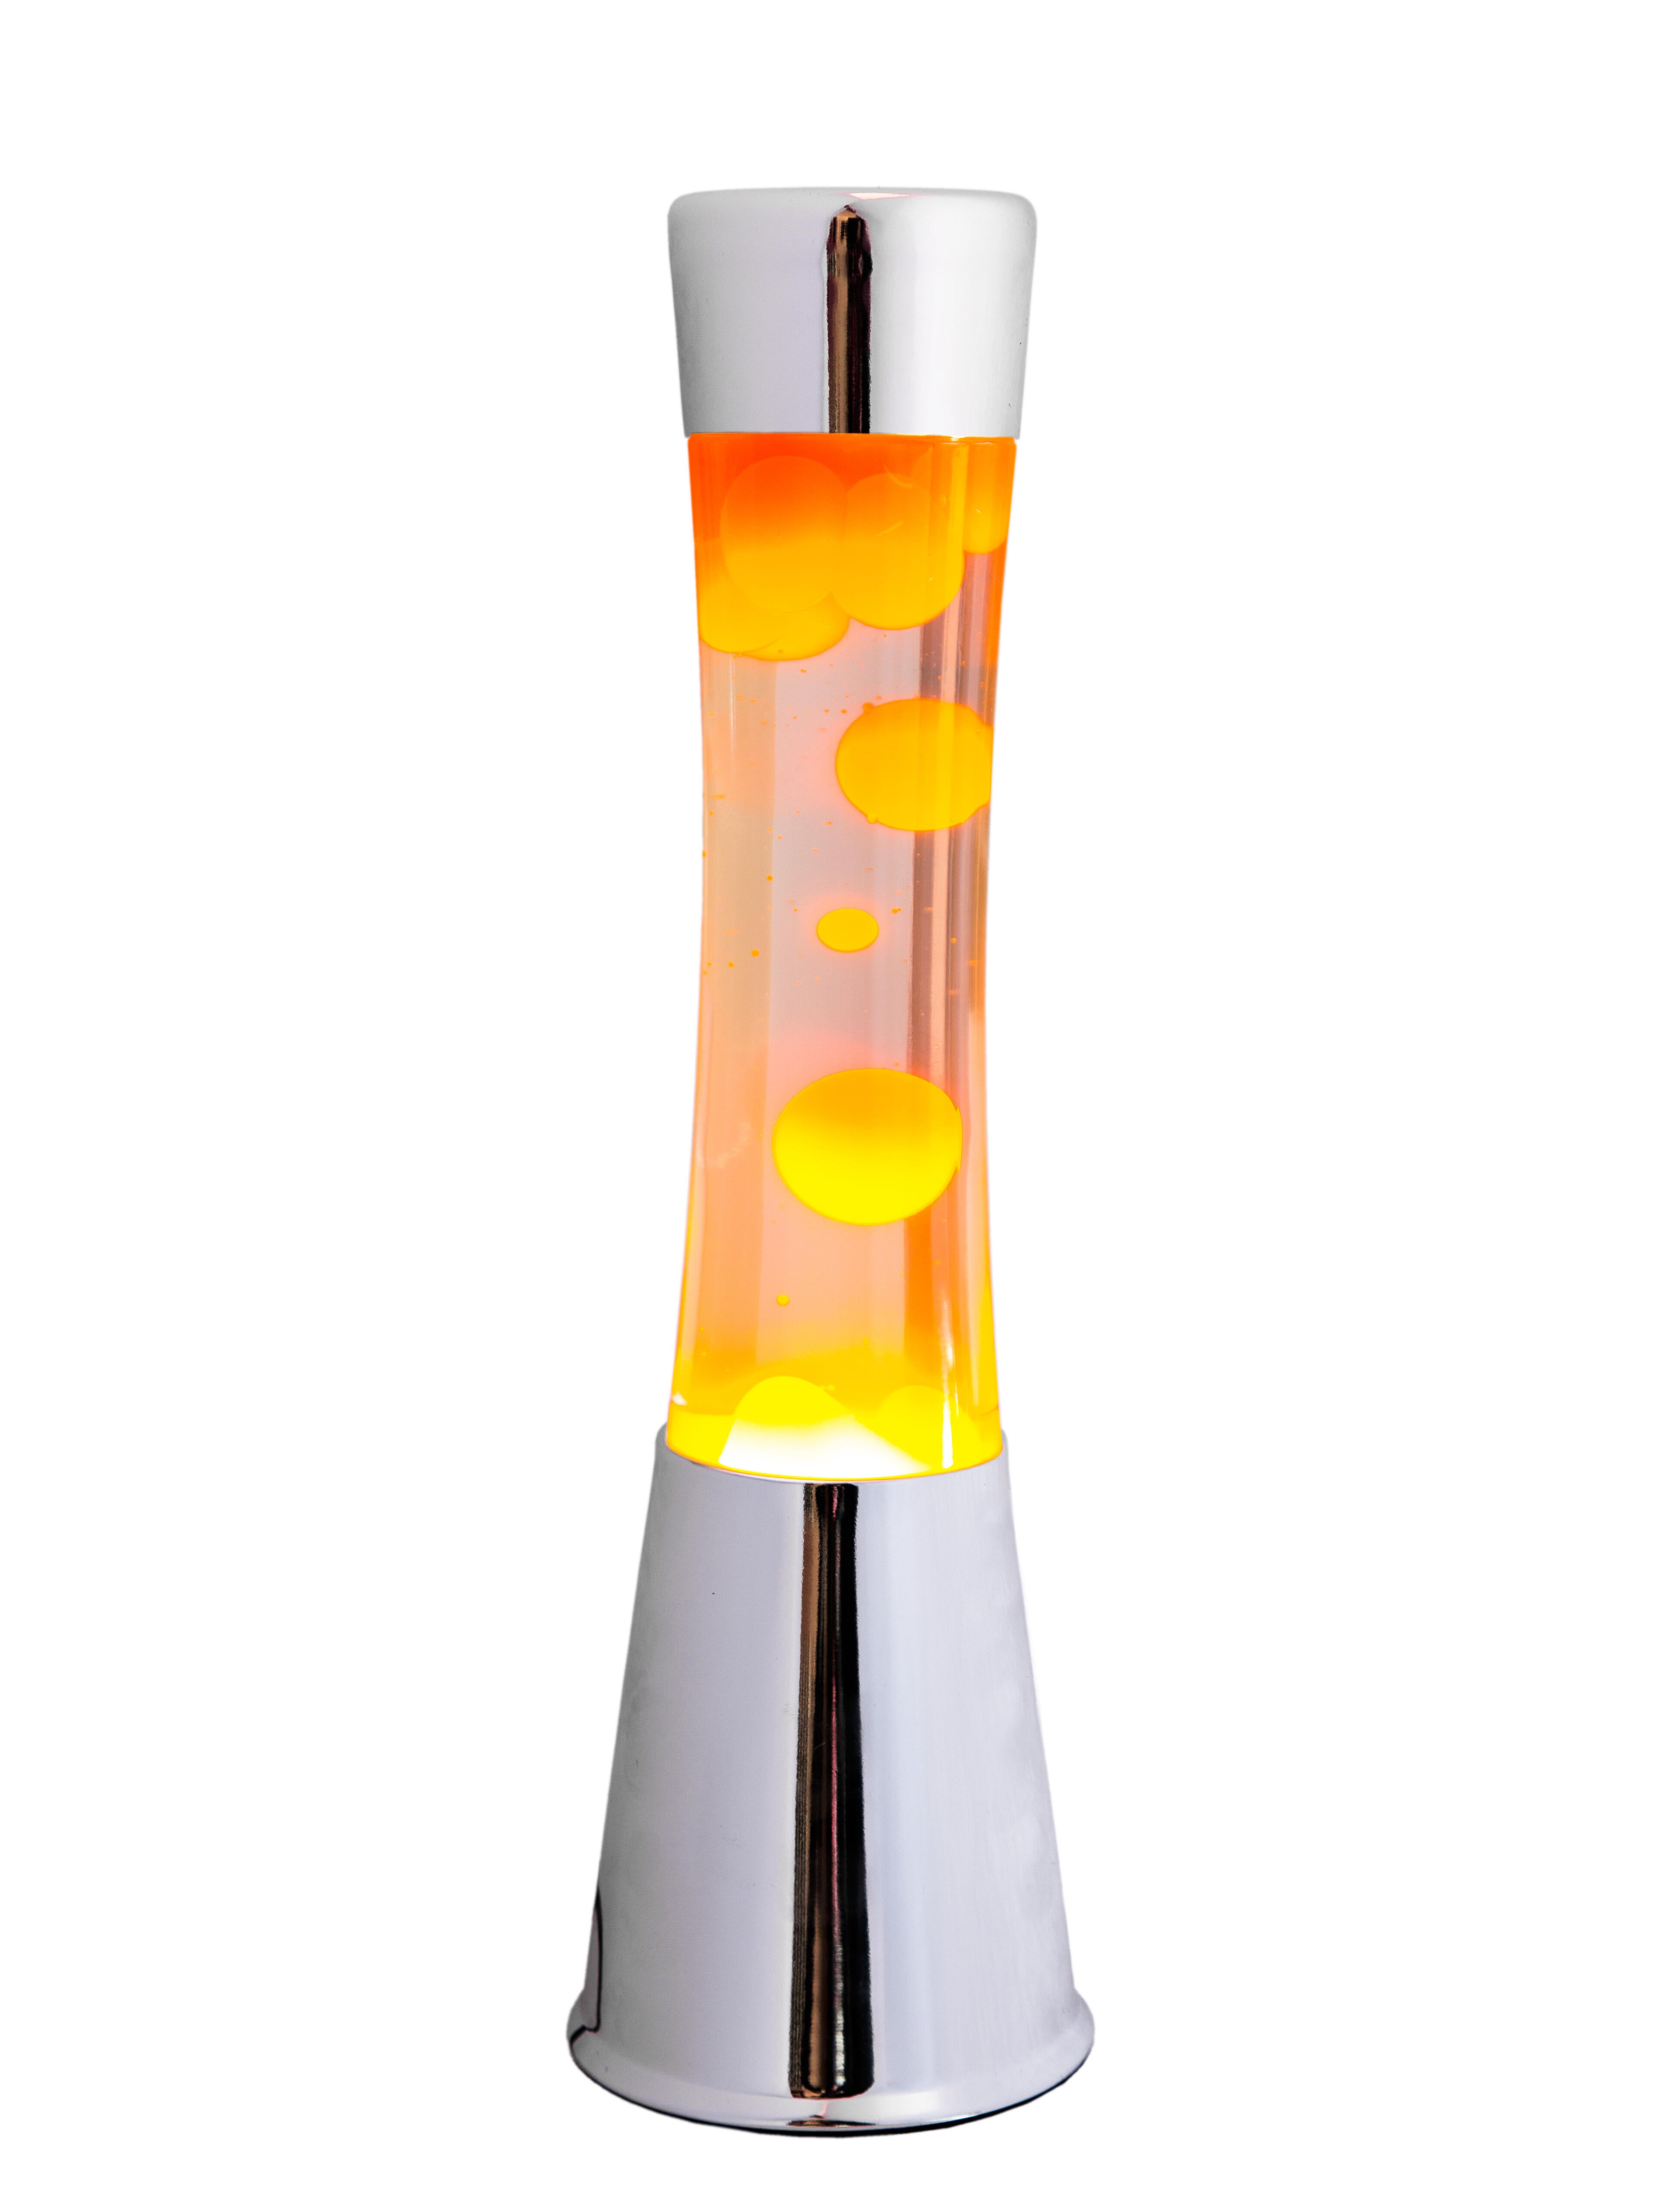 Lámpara de mesa lava naranja base cromo